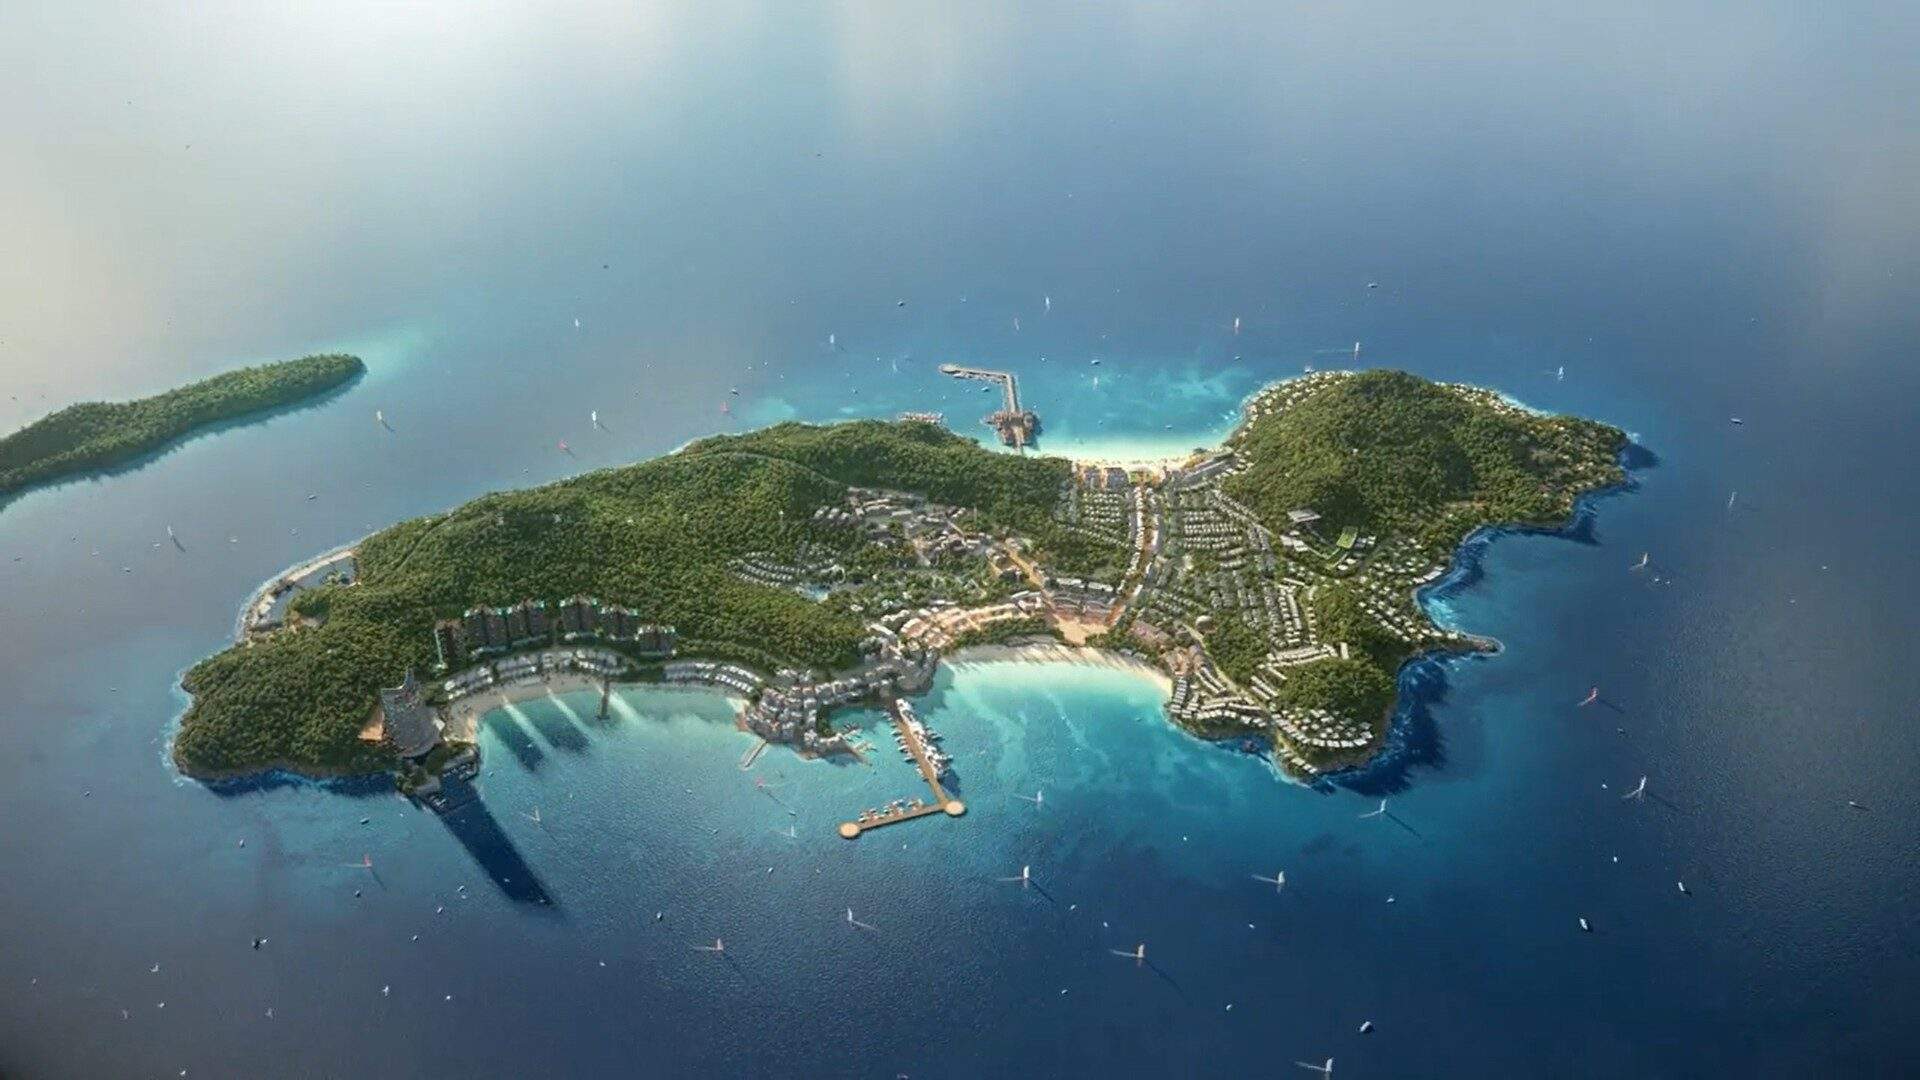 Hon thom paradise island sẽ là siêu tổ hợp giải trí - nghỉ dưỡng - đầu tư tầm cỡ quốc tế